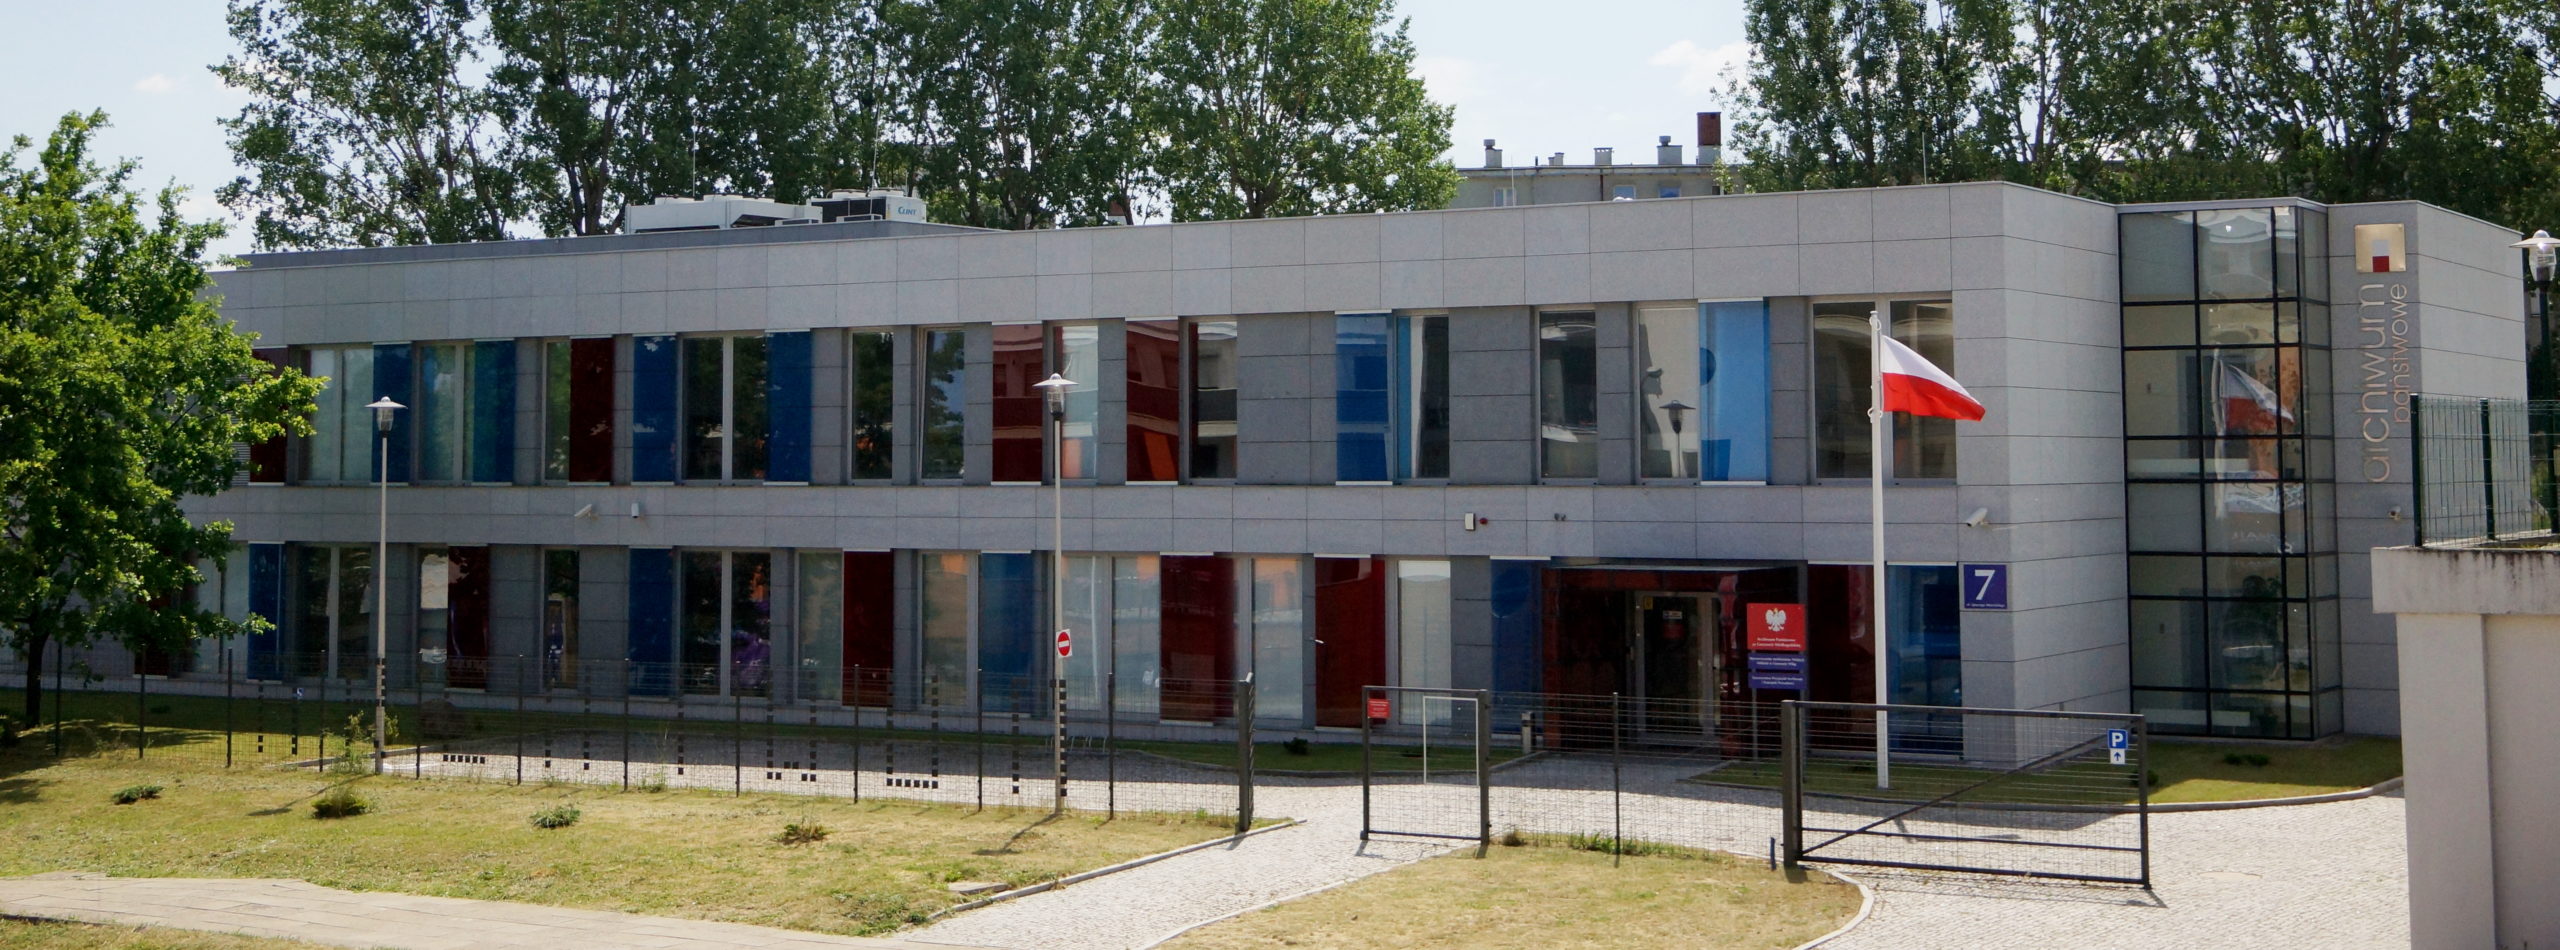 Budynek archiwum z dużą ilością przeszkleń zabarwionych na czerwono i niebiesko. Przed budynkiem trawnik oraz ogrodzenie. Na maszcie przed budynkiem powiewa polska flaga. 